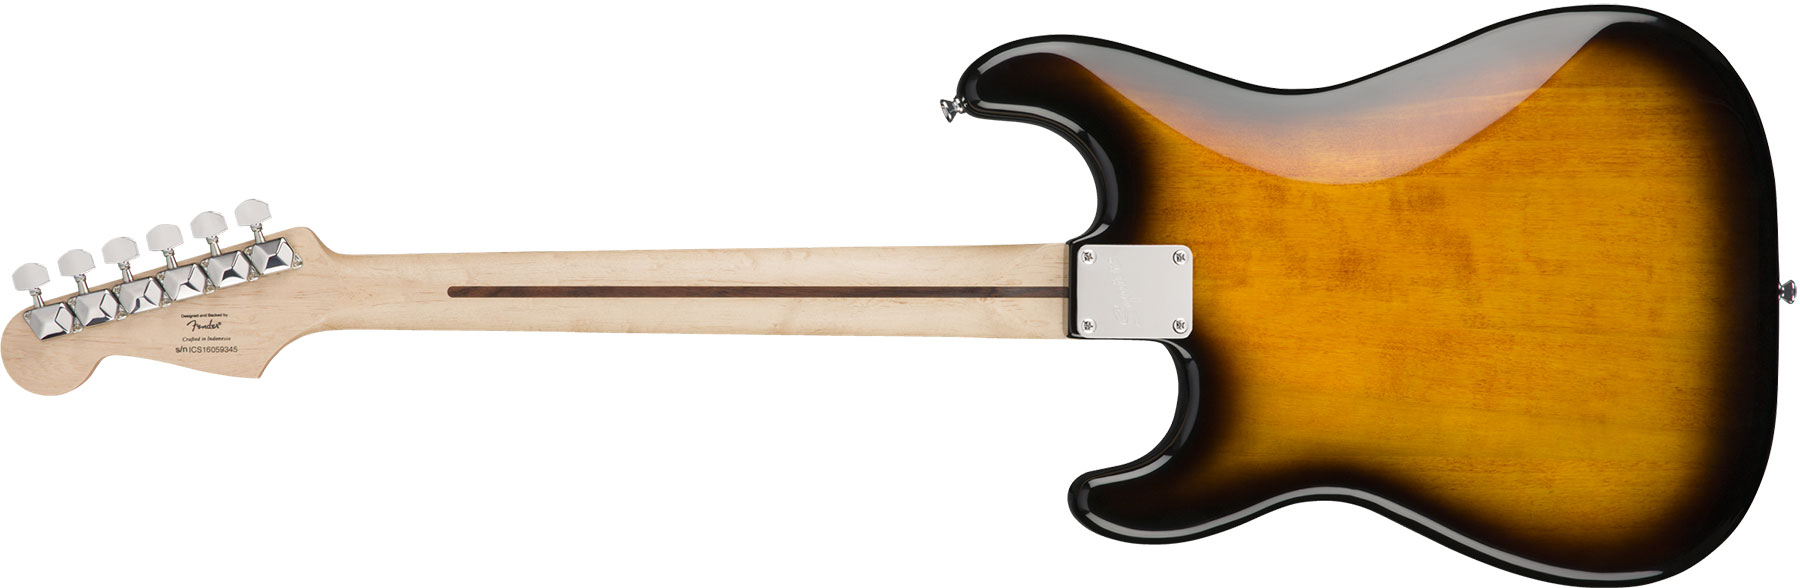 Squier Bullet Stratocaster Ht Sss Rw - Brown Sunburst - Elektrische gitaar in Str-vorm - Variation 1